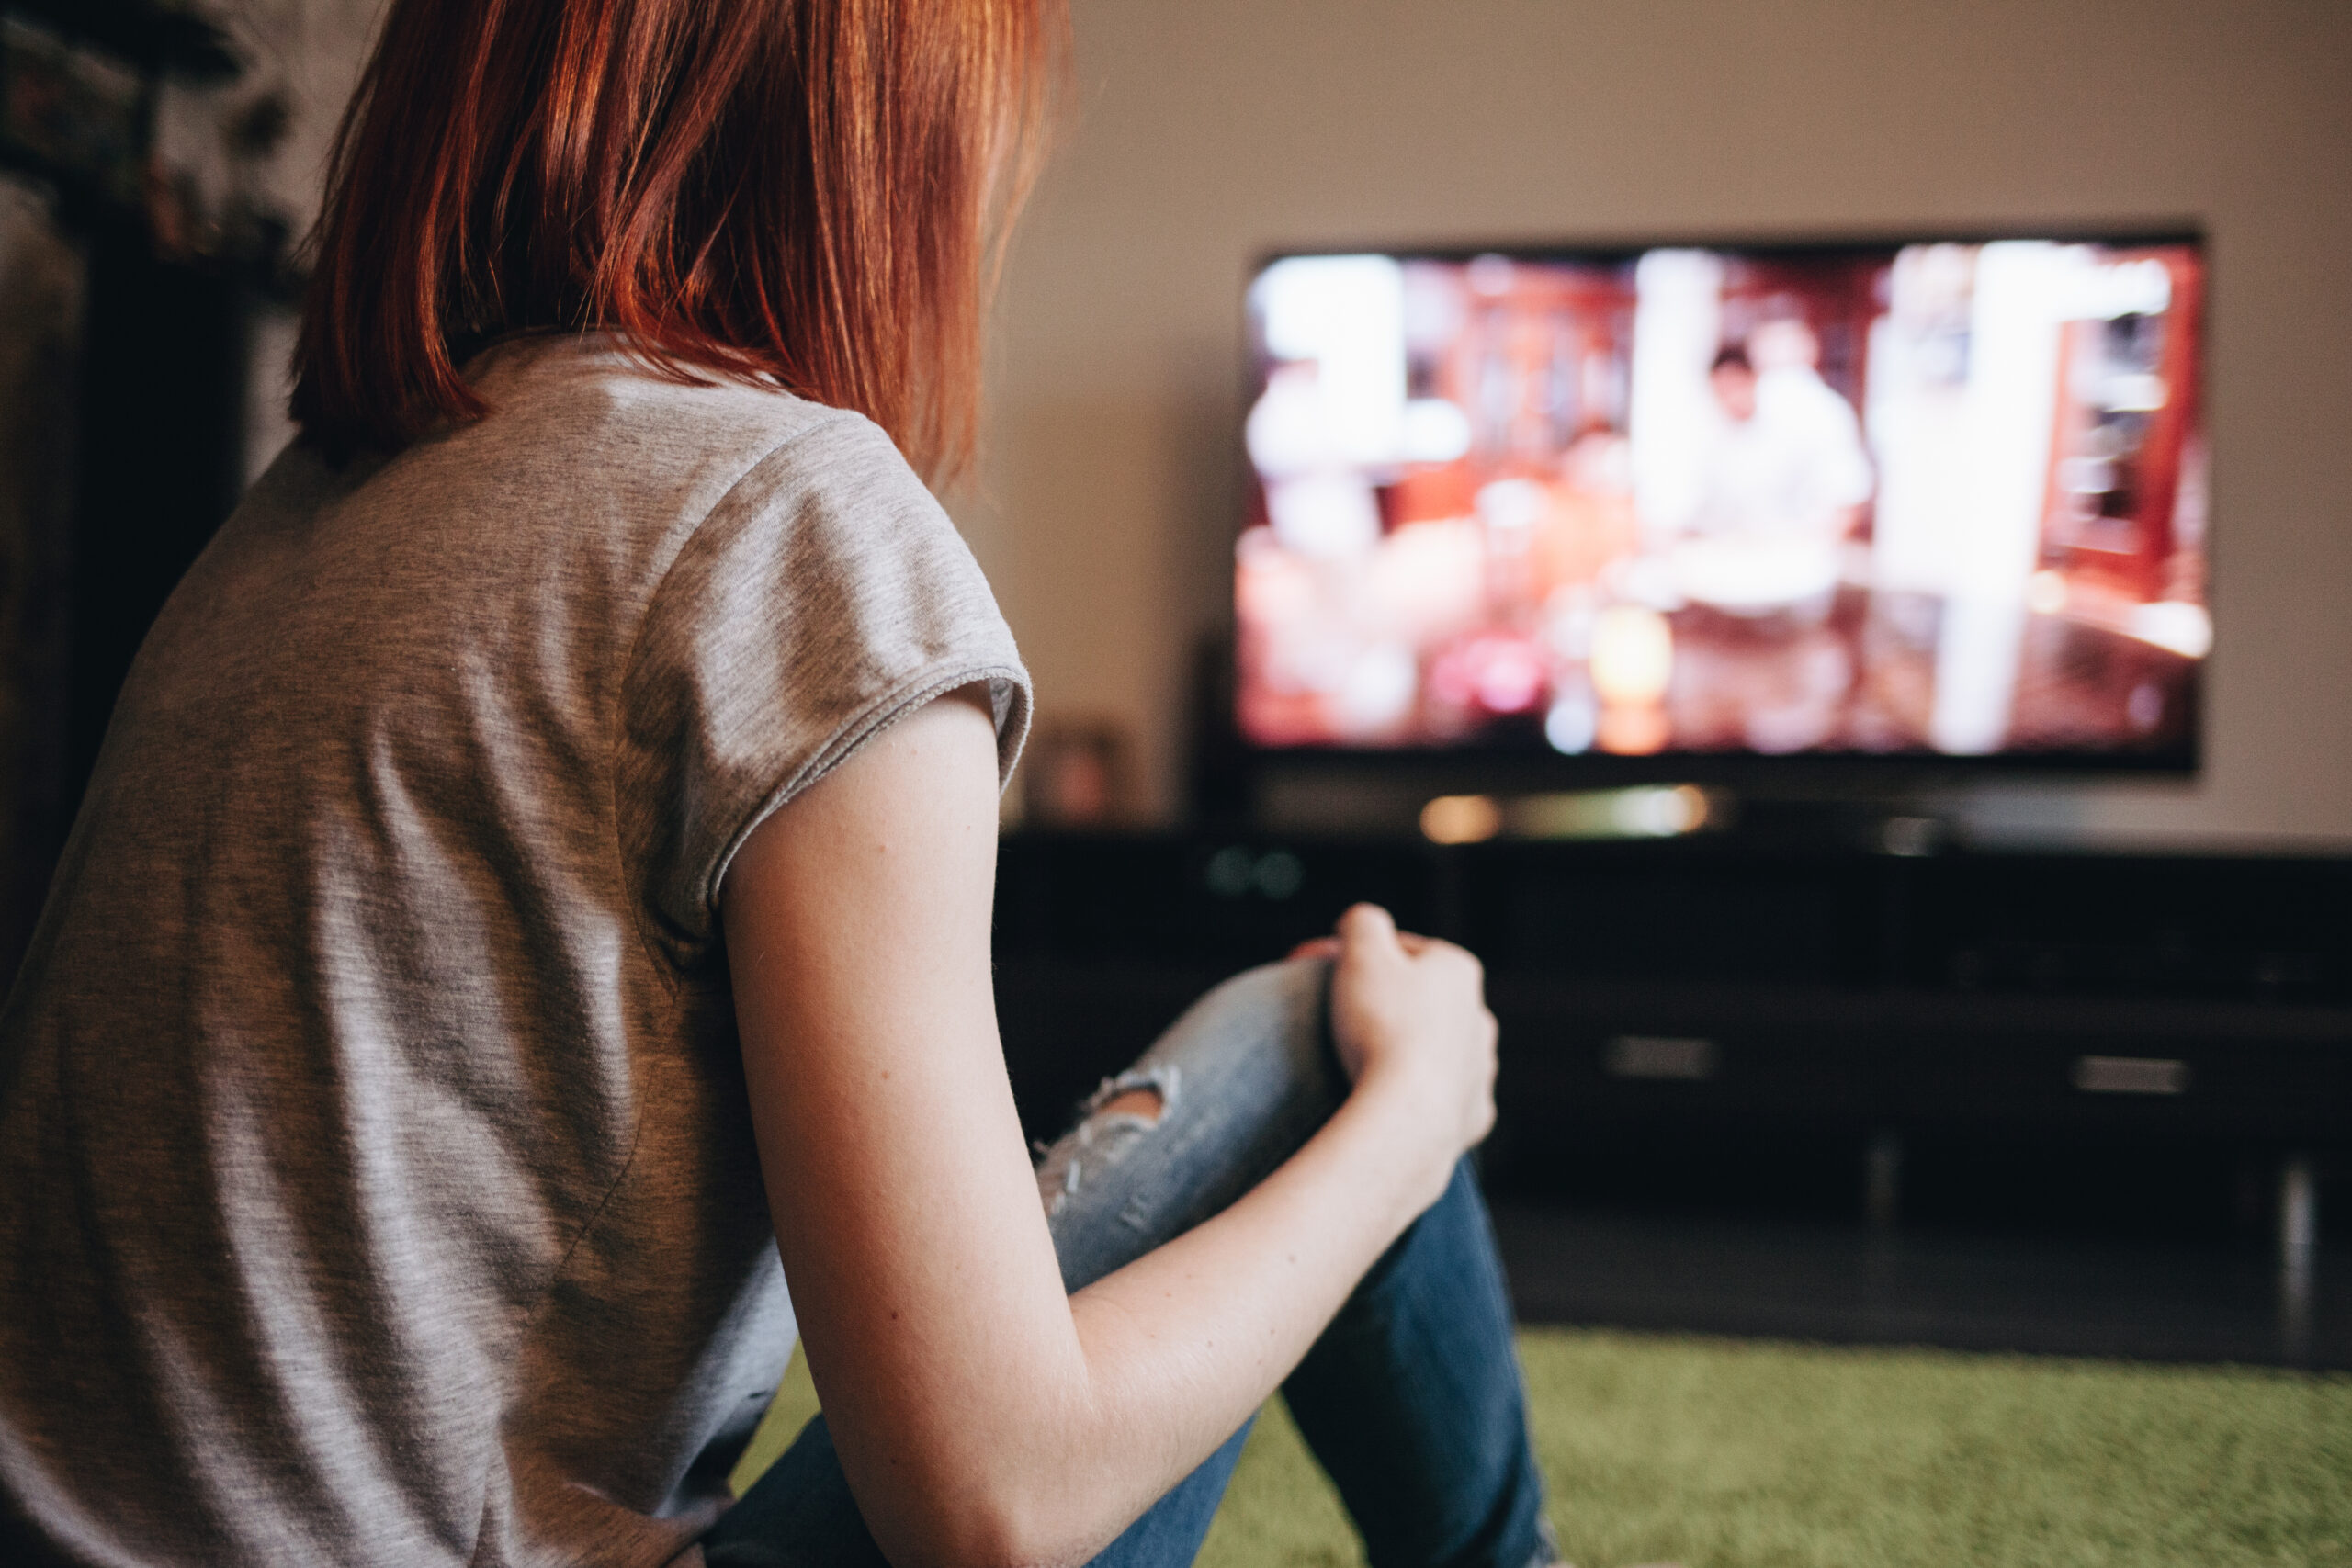 Jovens com menos de 24 anos não vêem TV aberta como os mais velhos; veja por quê